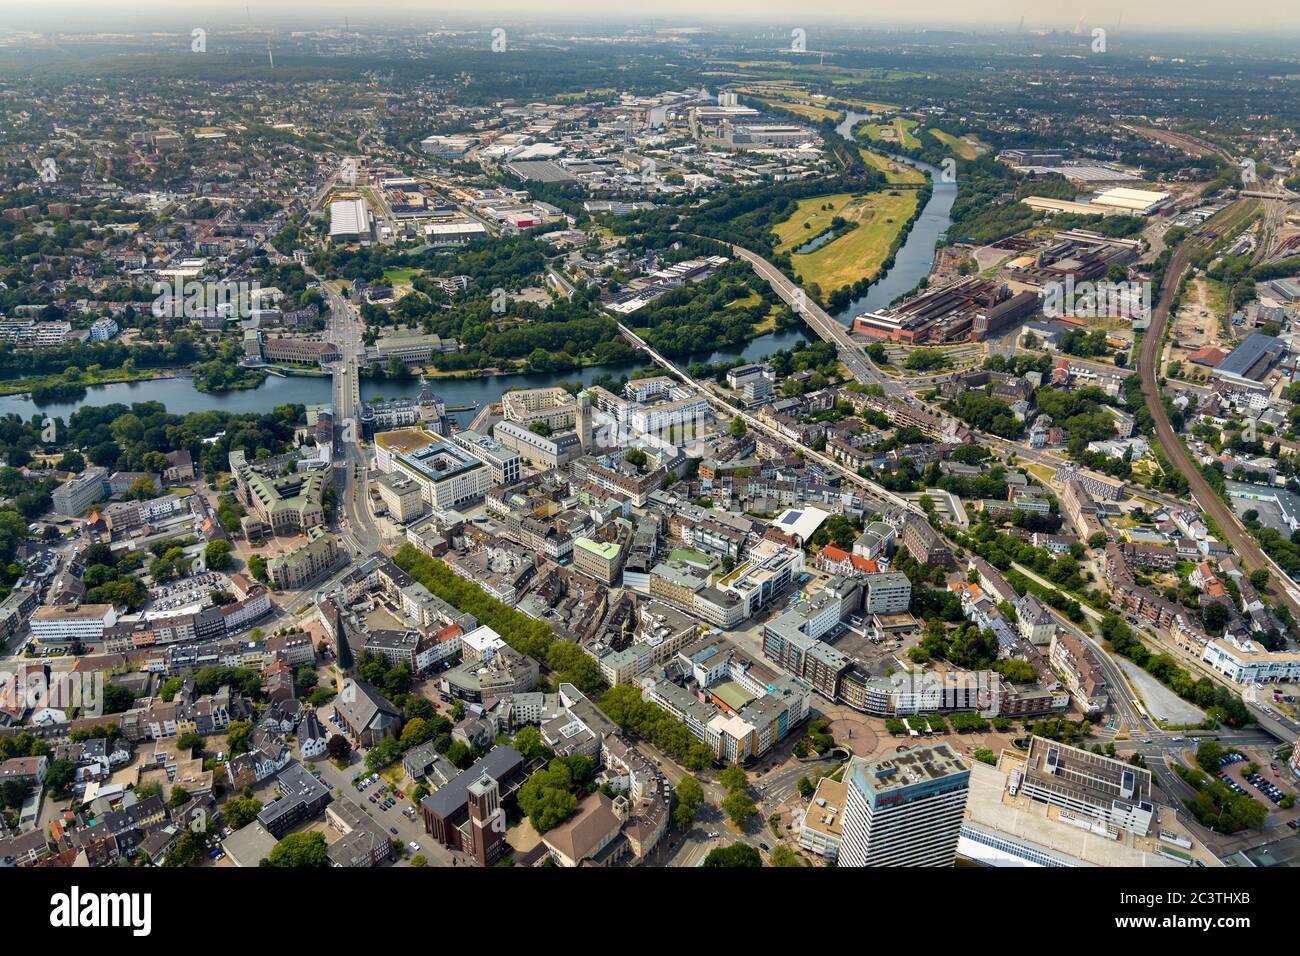 Vista de la ciudad vieja, distrito Altstadt I, 21.07.2019, vista aérea, Alemania, Renania del Norte-Westfalia, Área de Ruhr, Muelheim/Ruhr Foto de stock